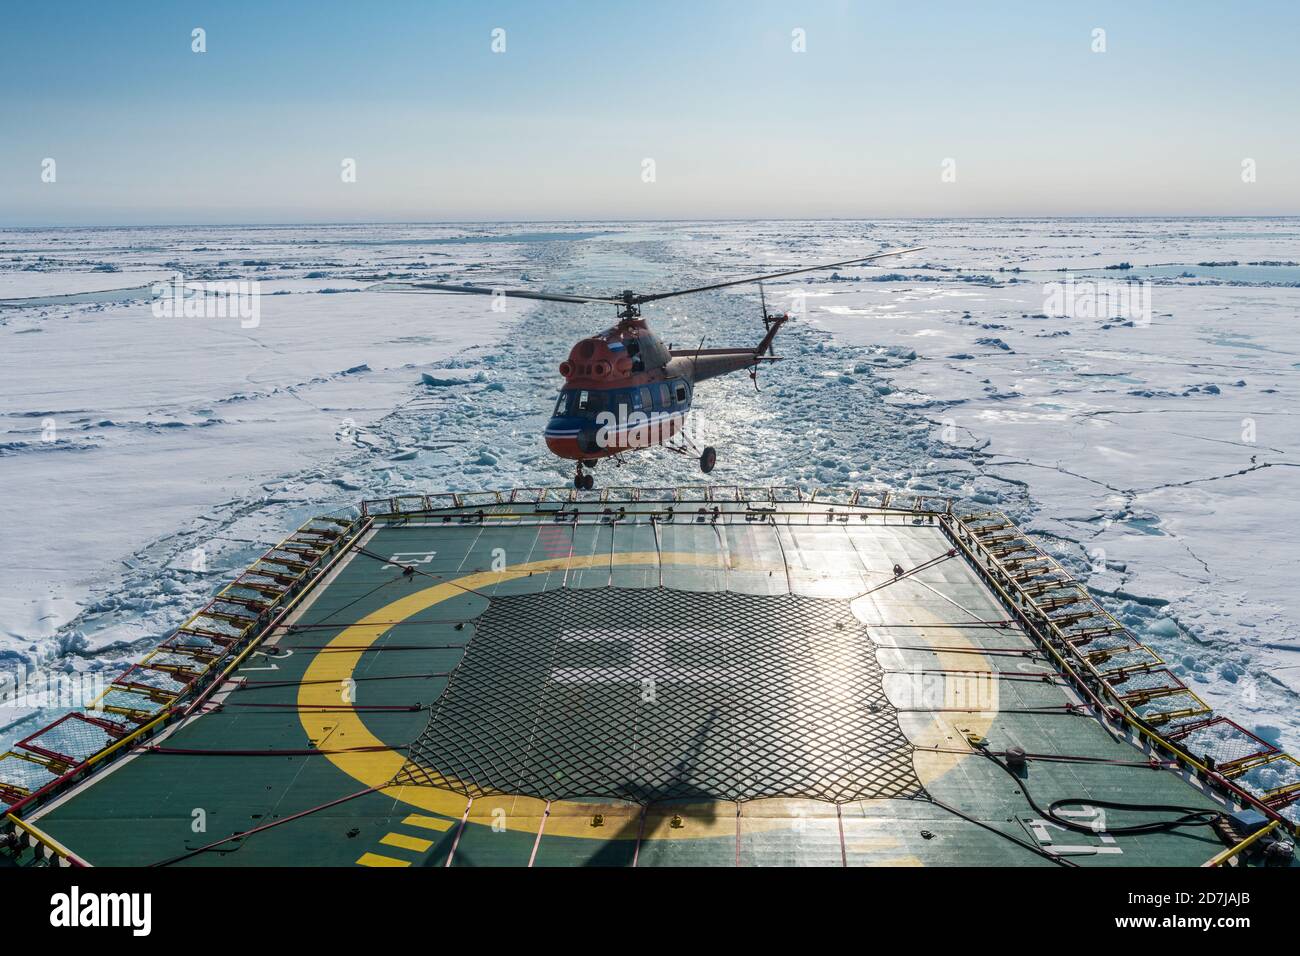 Helicóptero aterrizando en helipuerto de rompehielos 50 años de Victoria Espeleología a través del hielo del Océano Ártico Foto de stock